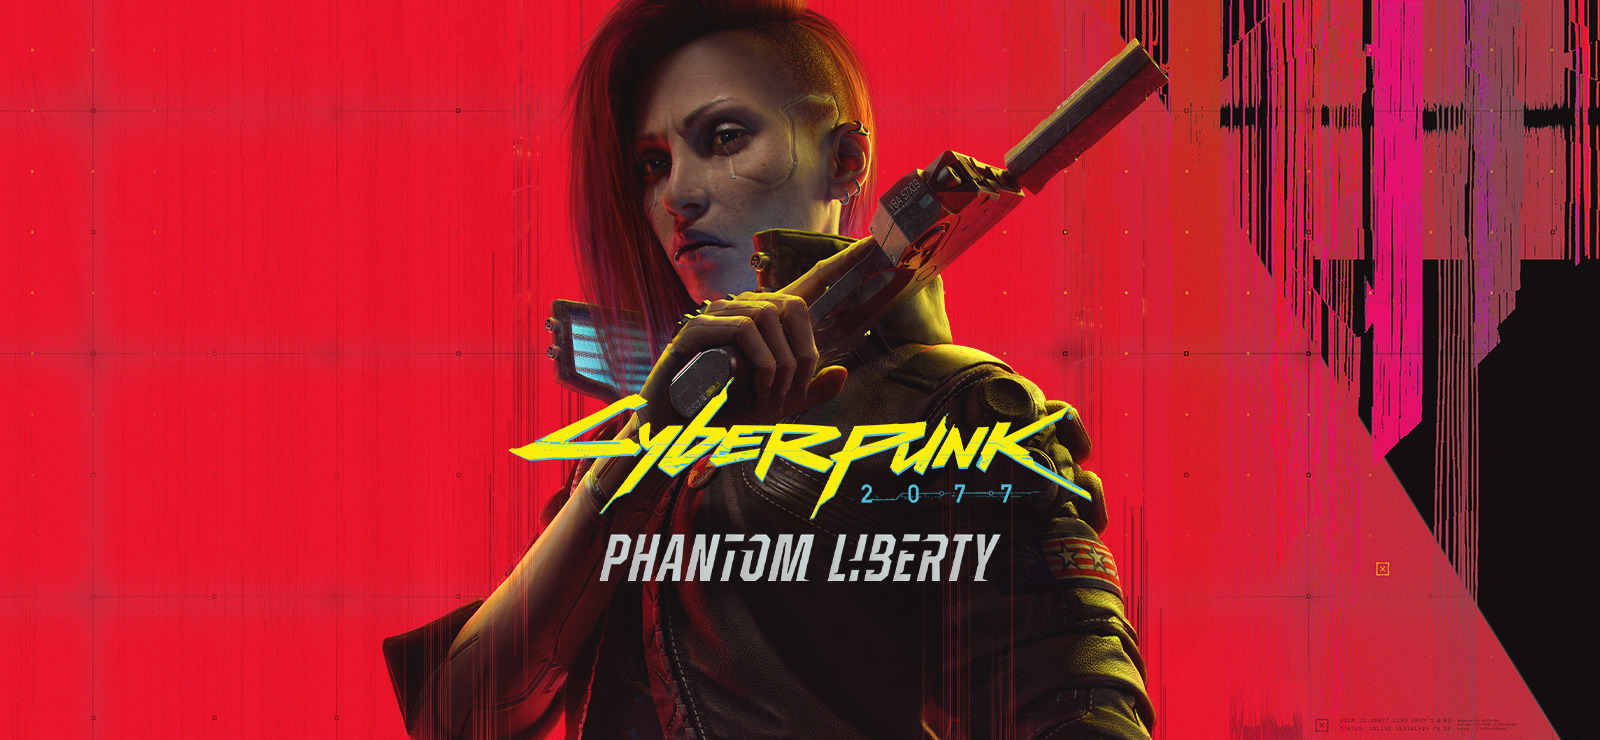 Cyberpunk 2077: Phantom Liberty wallpaper 02 1080p Vertical